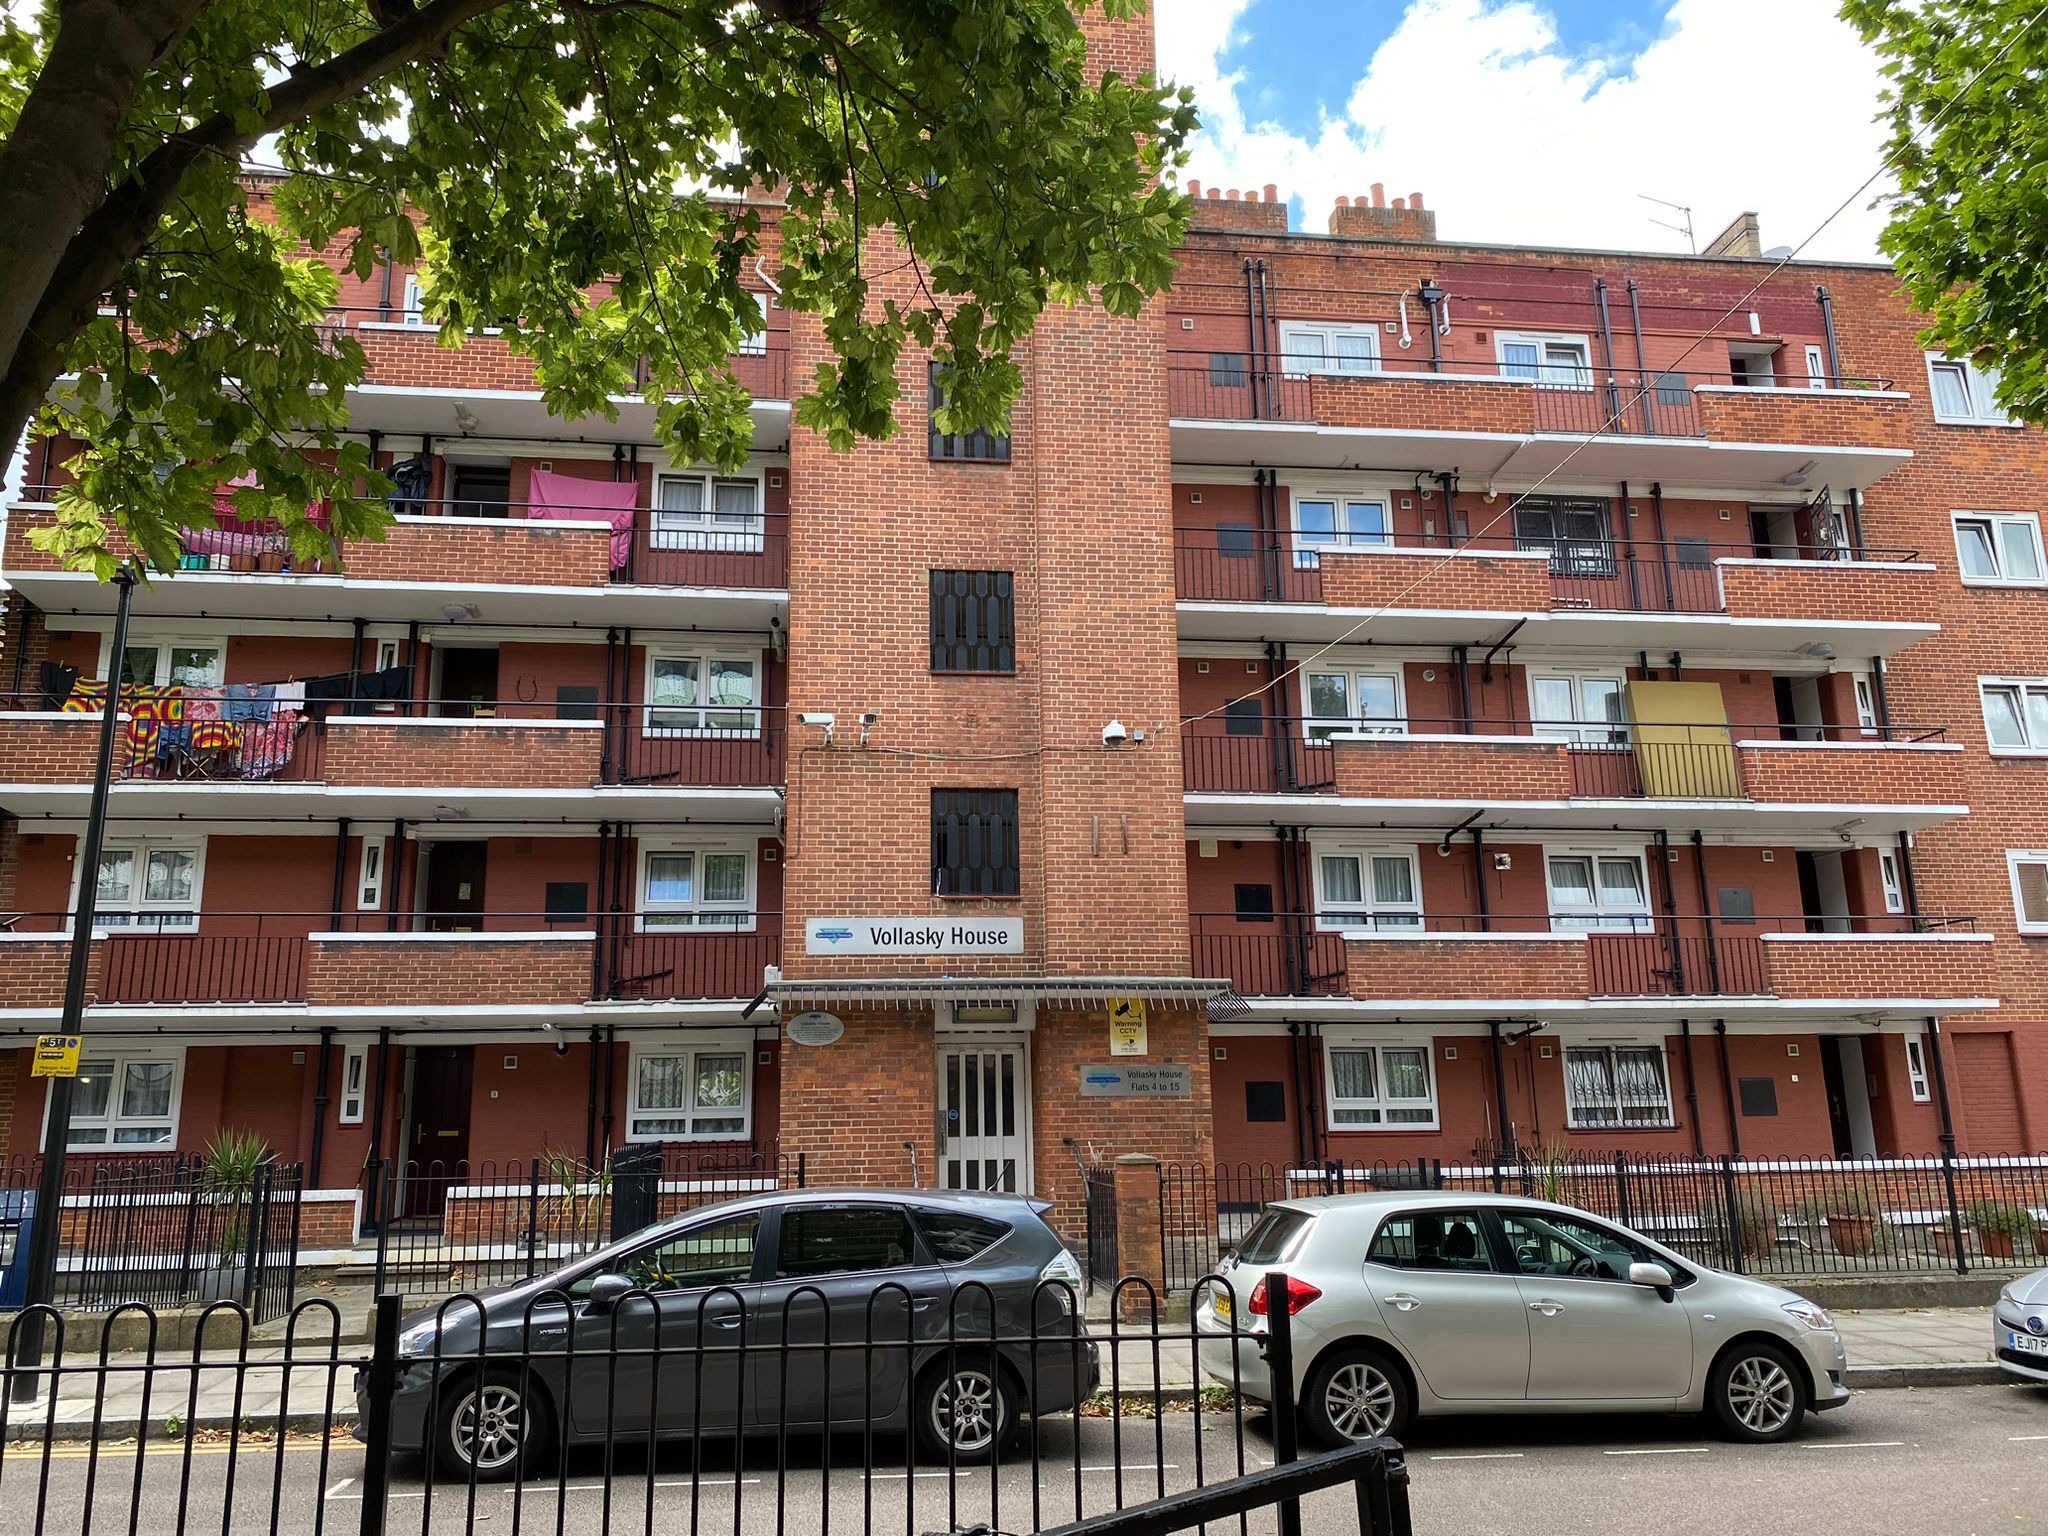 Housing block in east London 